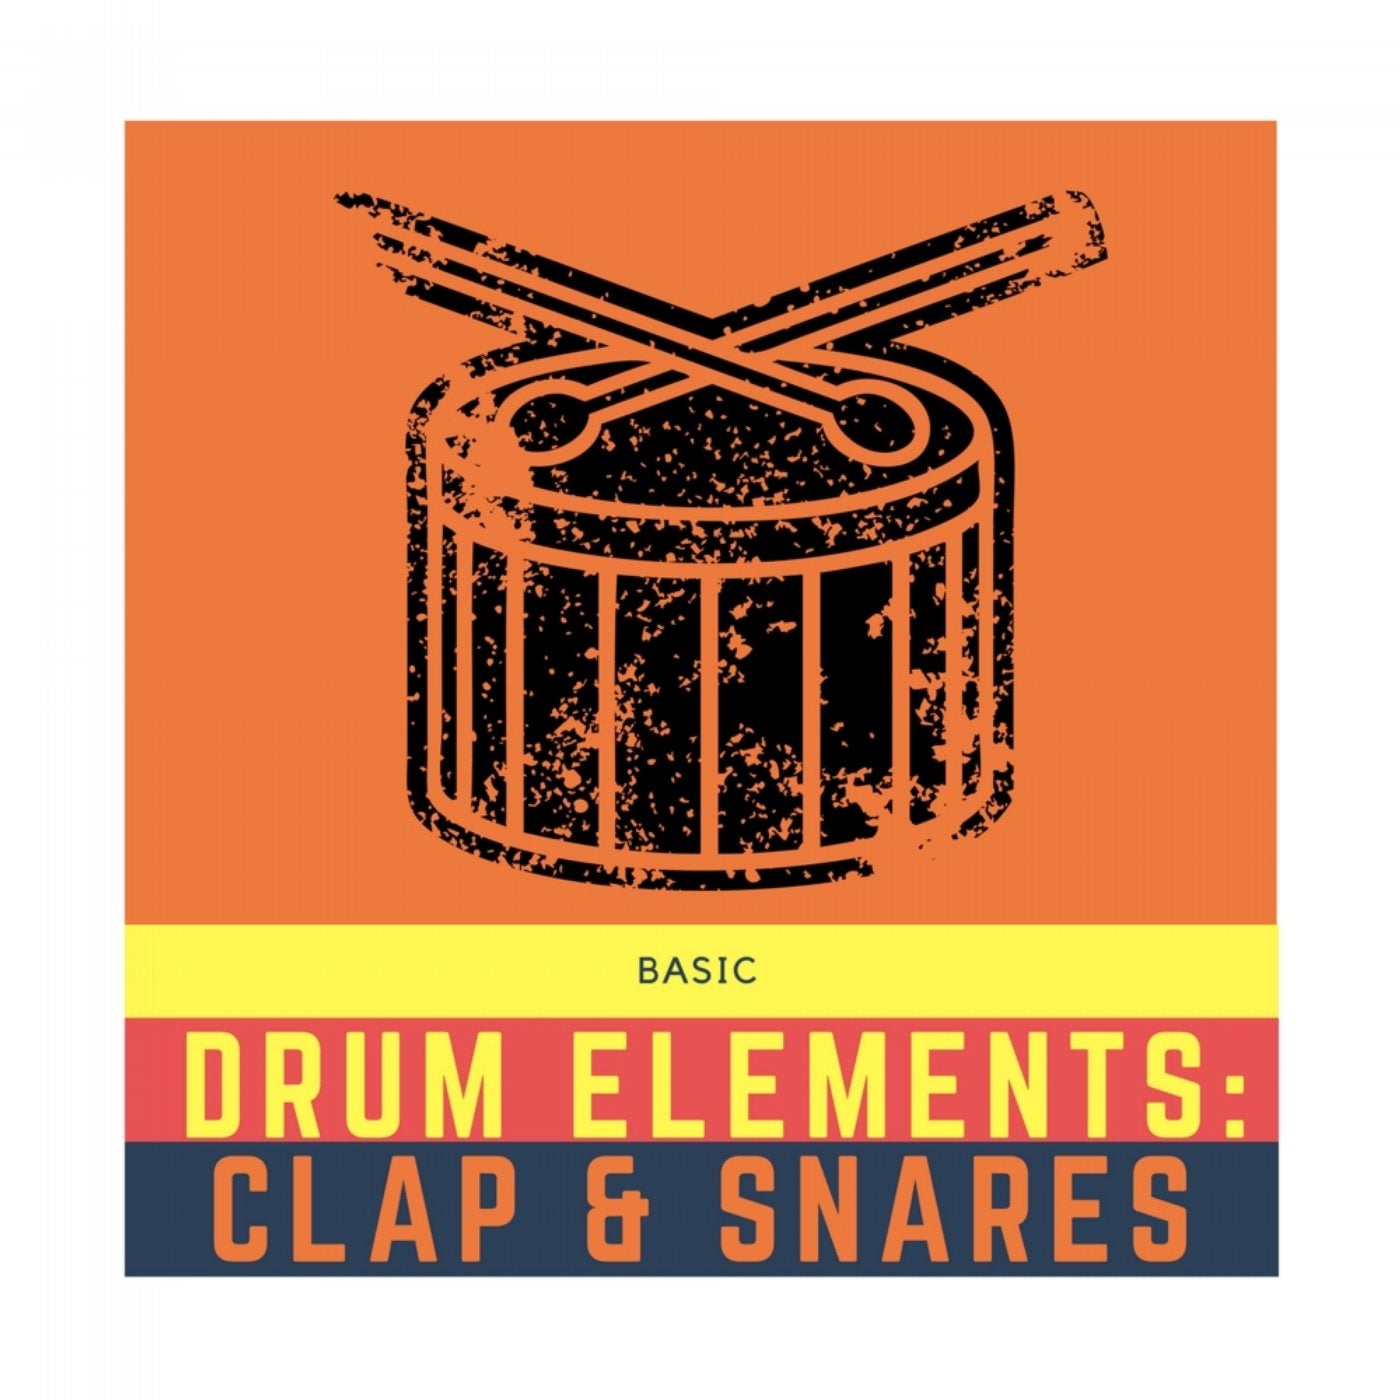 Basic Drum Elements: Clap & Snares